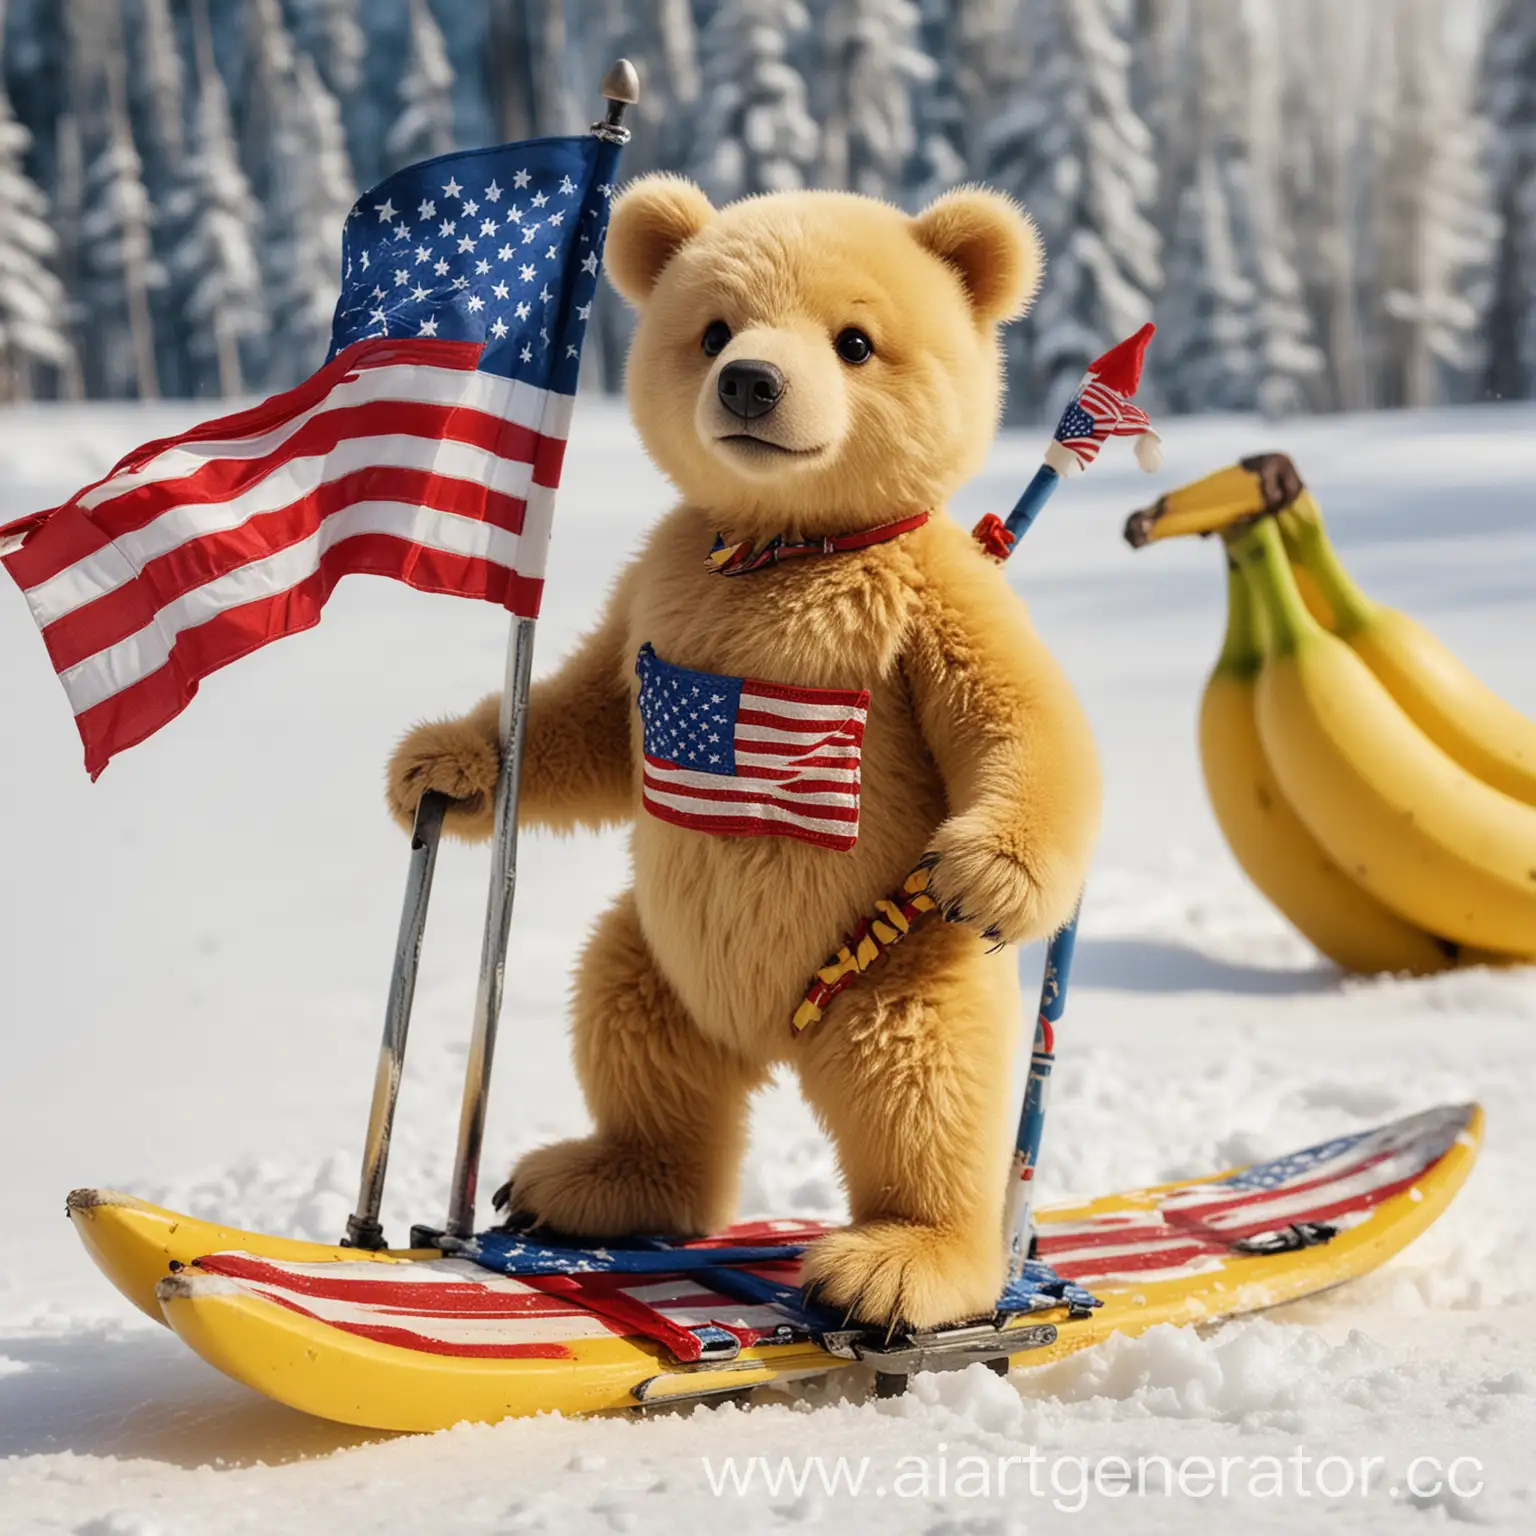 Yellow-Bear-Skiing-with-American-Flag-and-Bananas